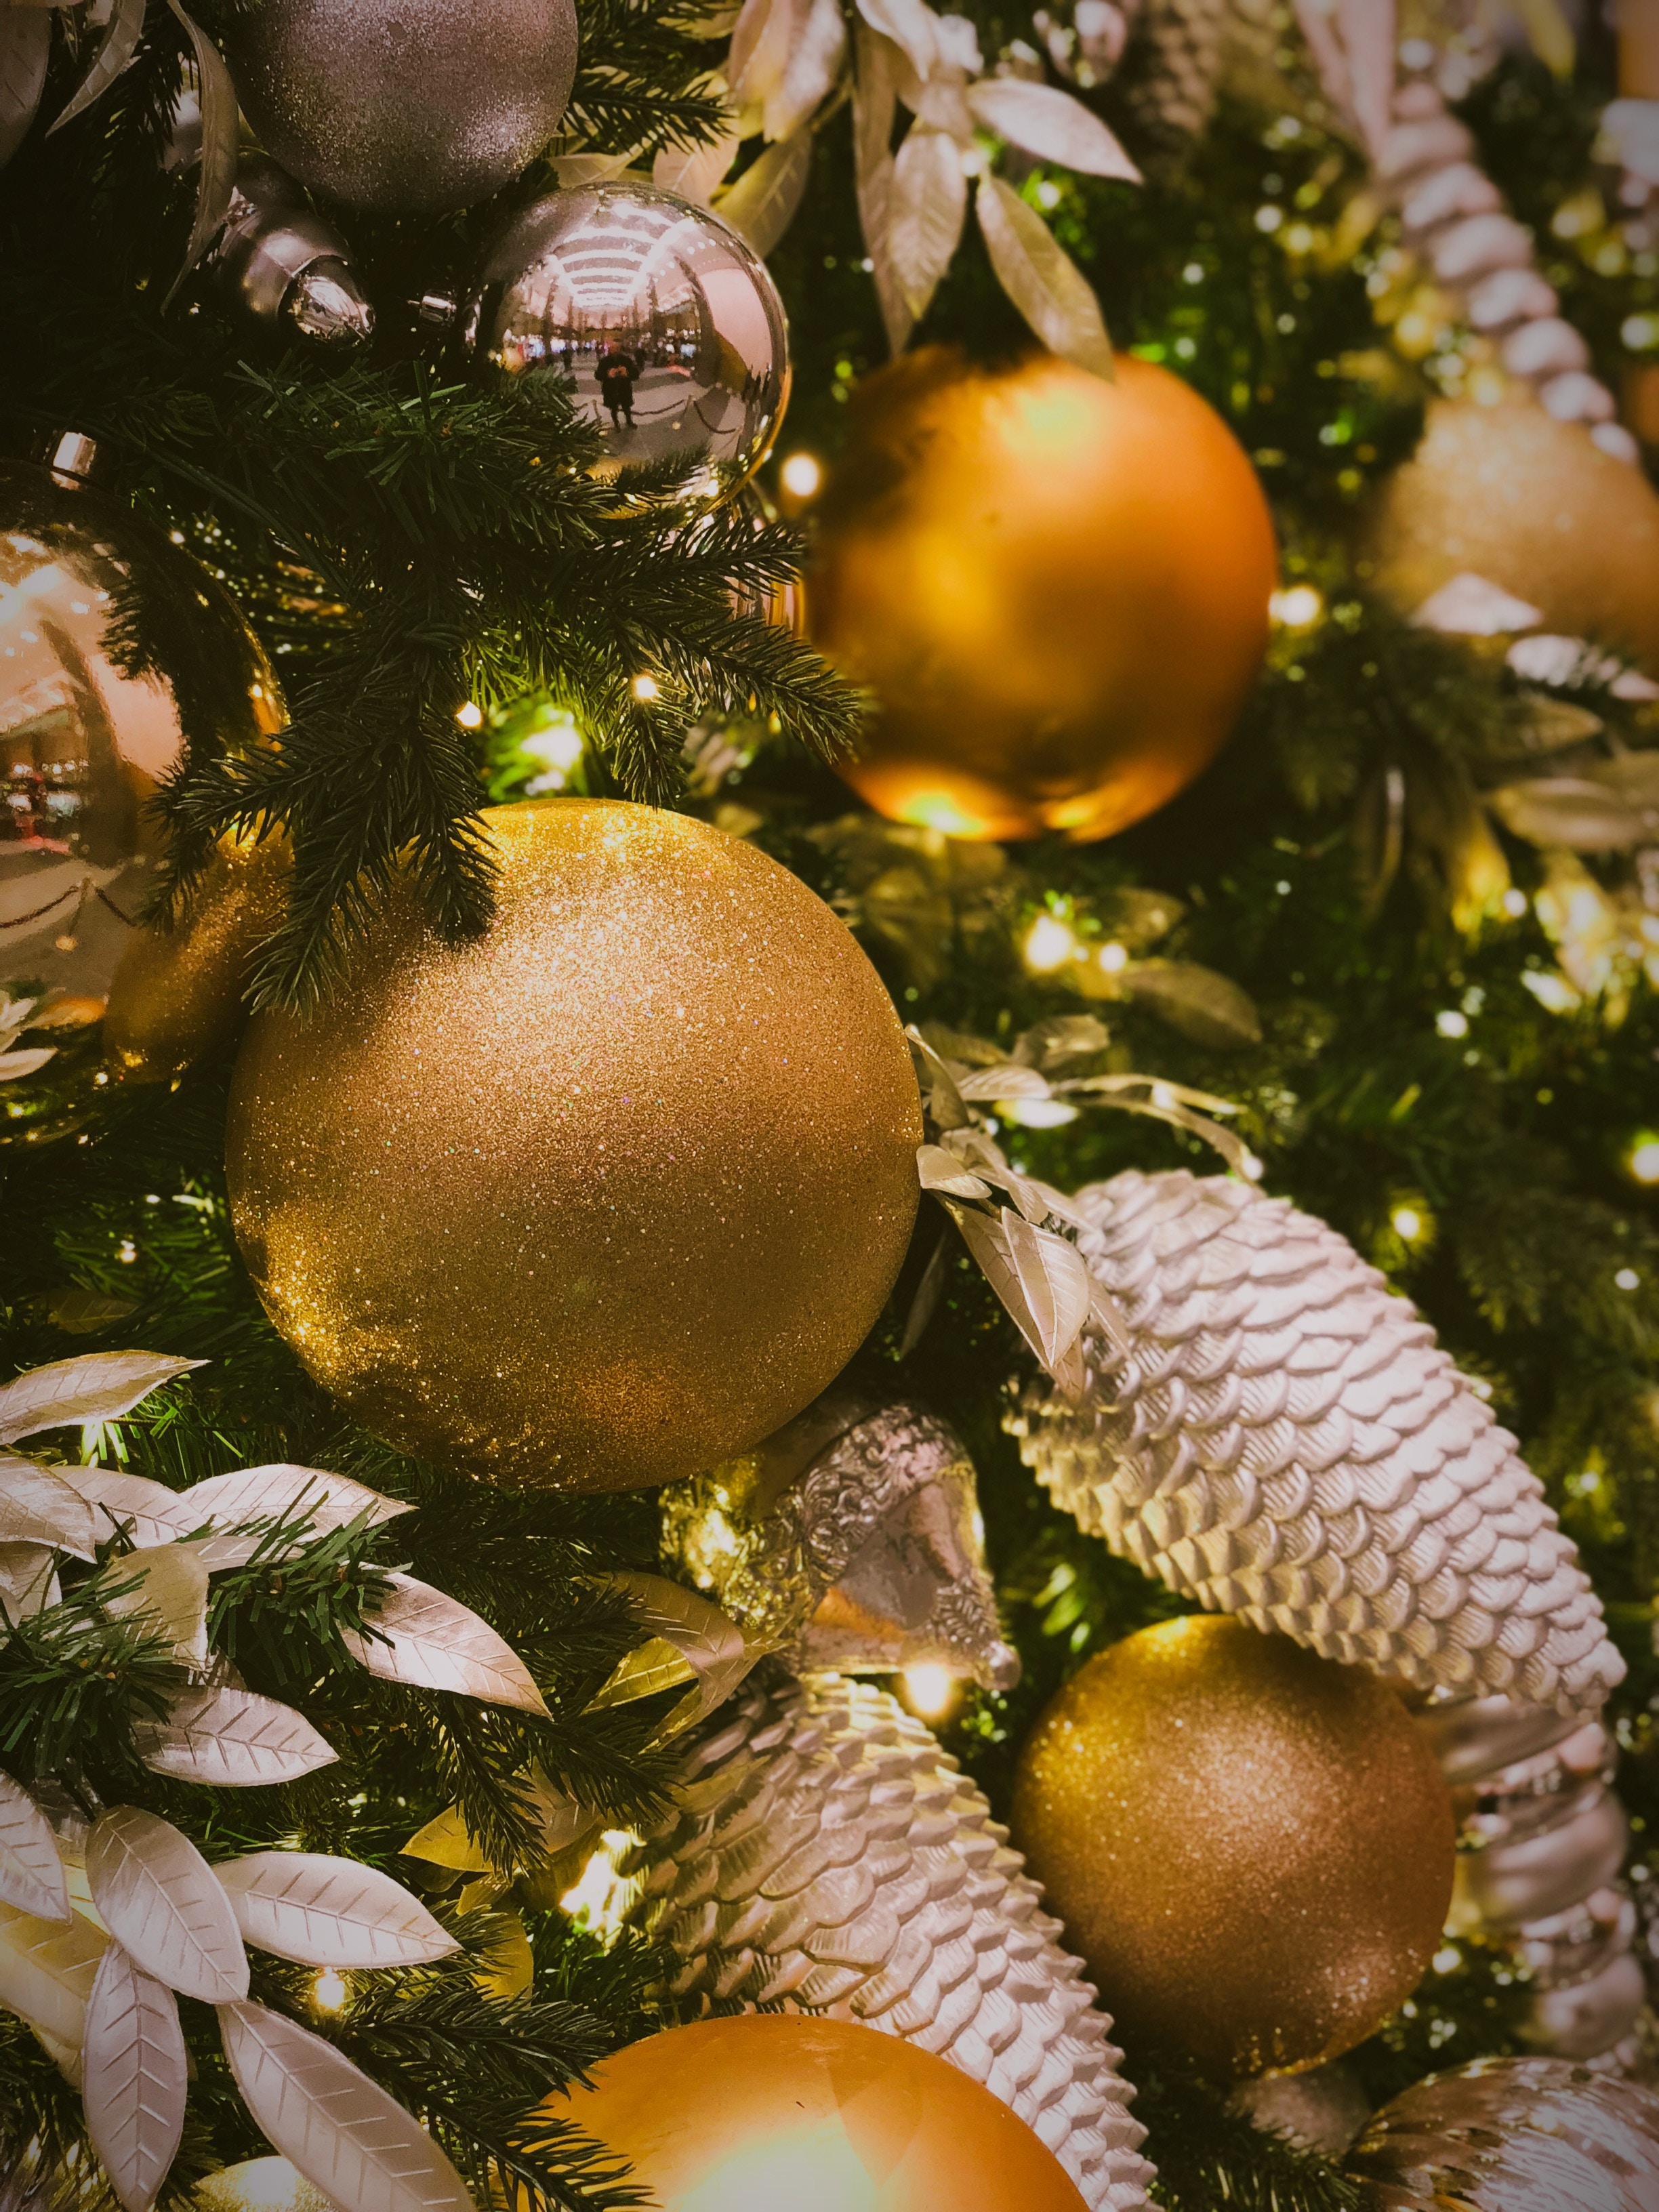 99339 descargar imagen vacaciones, brillar, brillo, bola, pelota, decoración, decoraciones de navidad, juguetes de árbol de navidad: fondos de pantalla y protectores de pantalla gratis